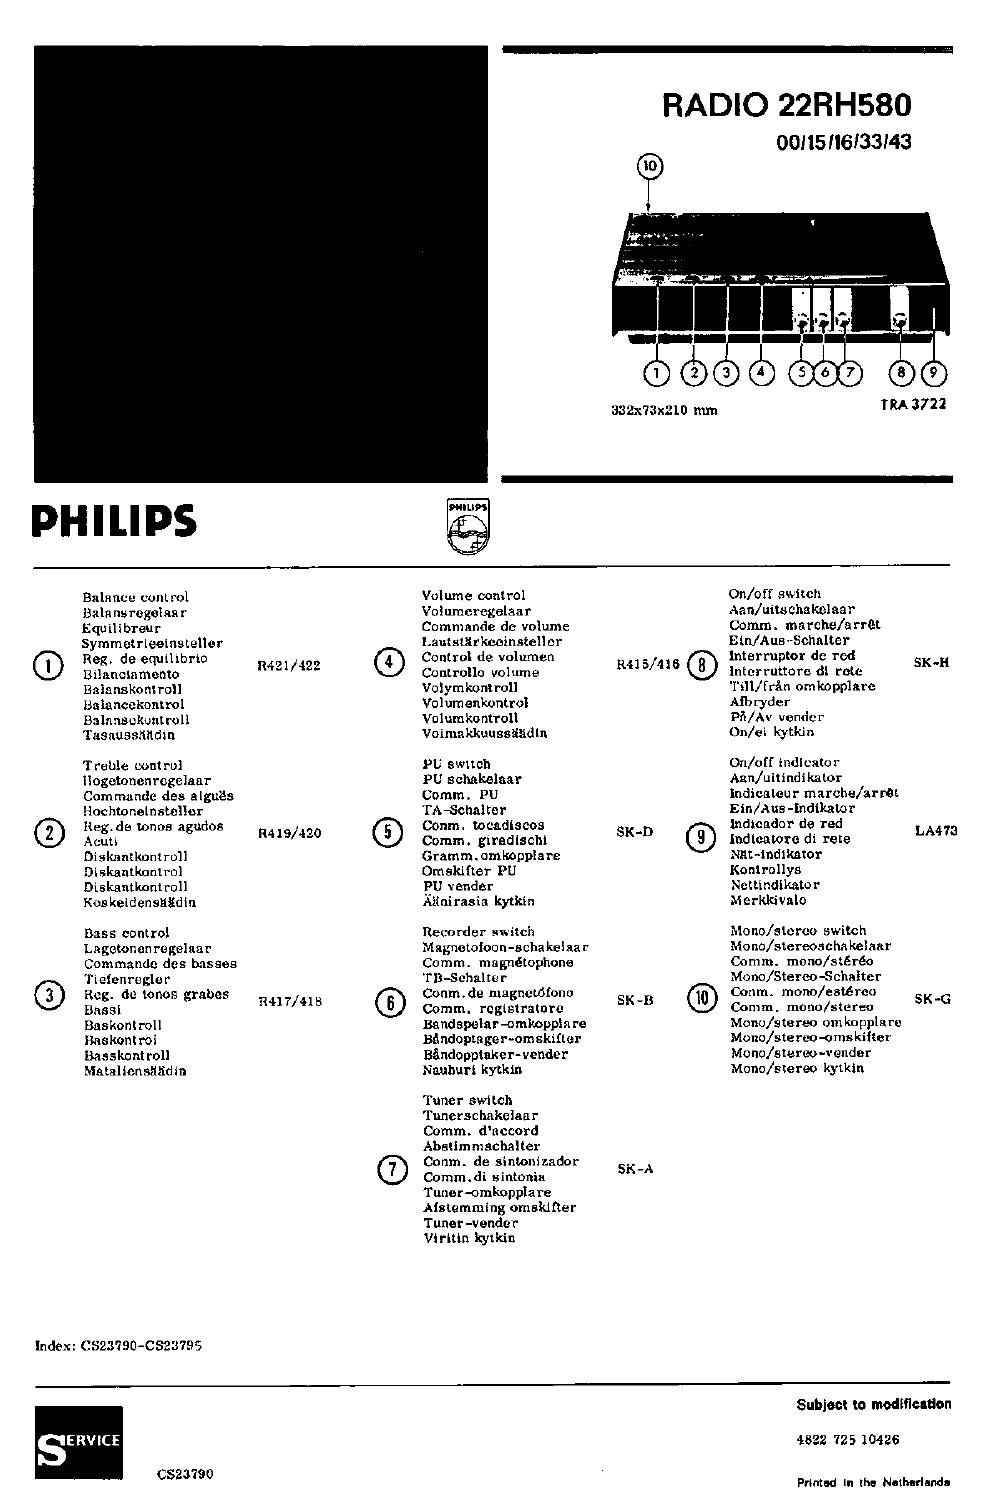 philips 22 rh 580 schematic